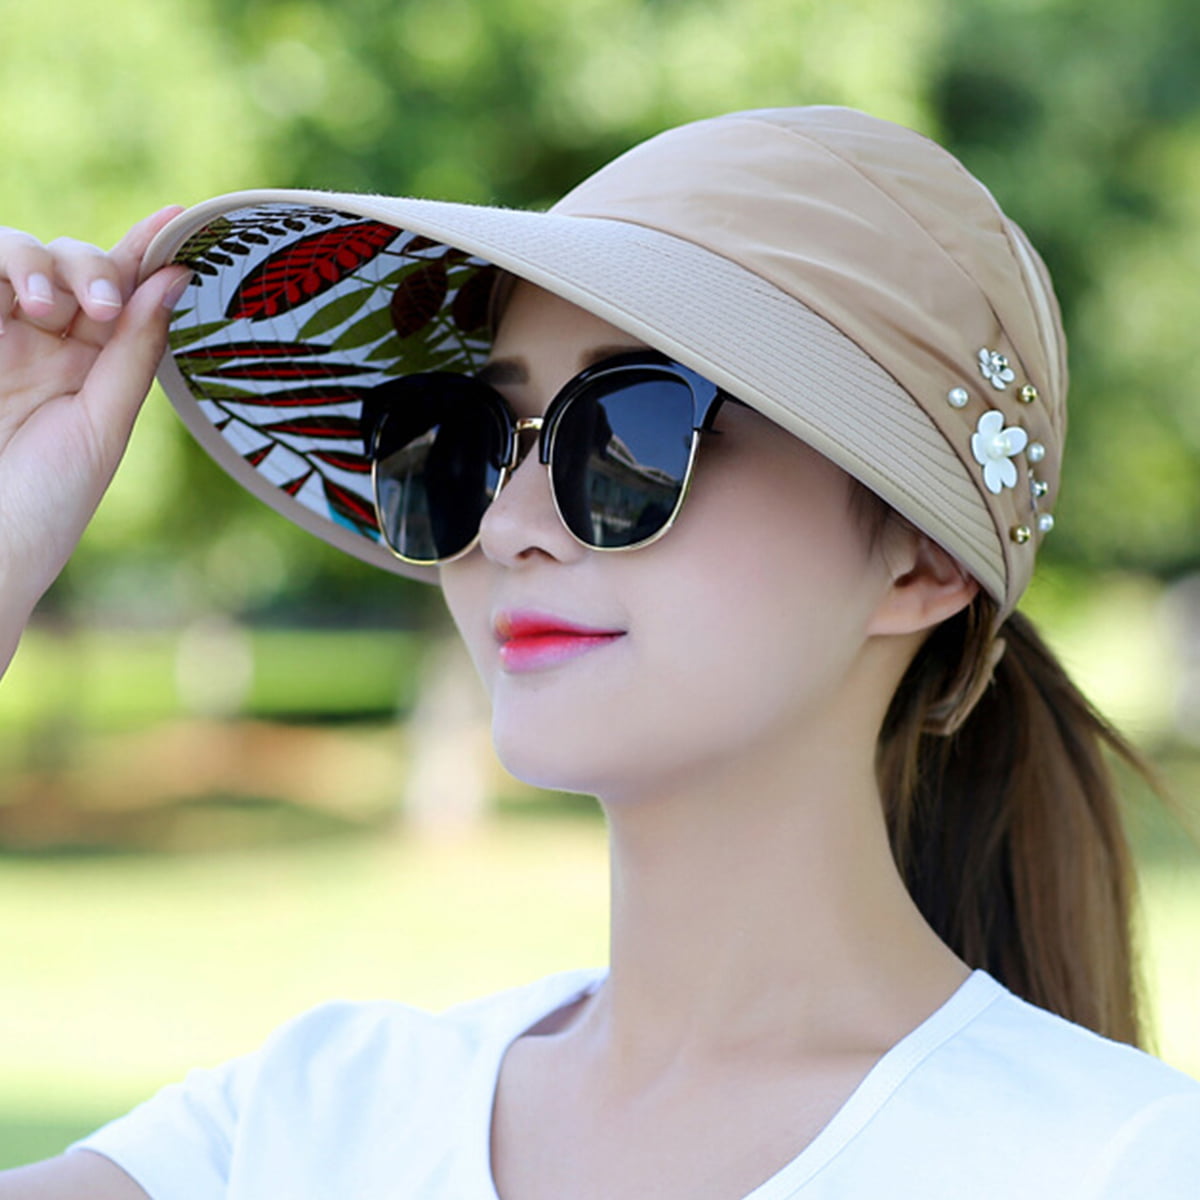 Bleu Nero Luxury Summer Sun Hat for Women Beach Straw Hat Wide Brim 50+SPF 